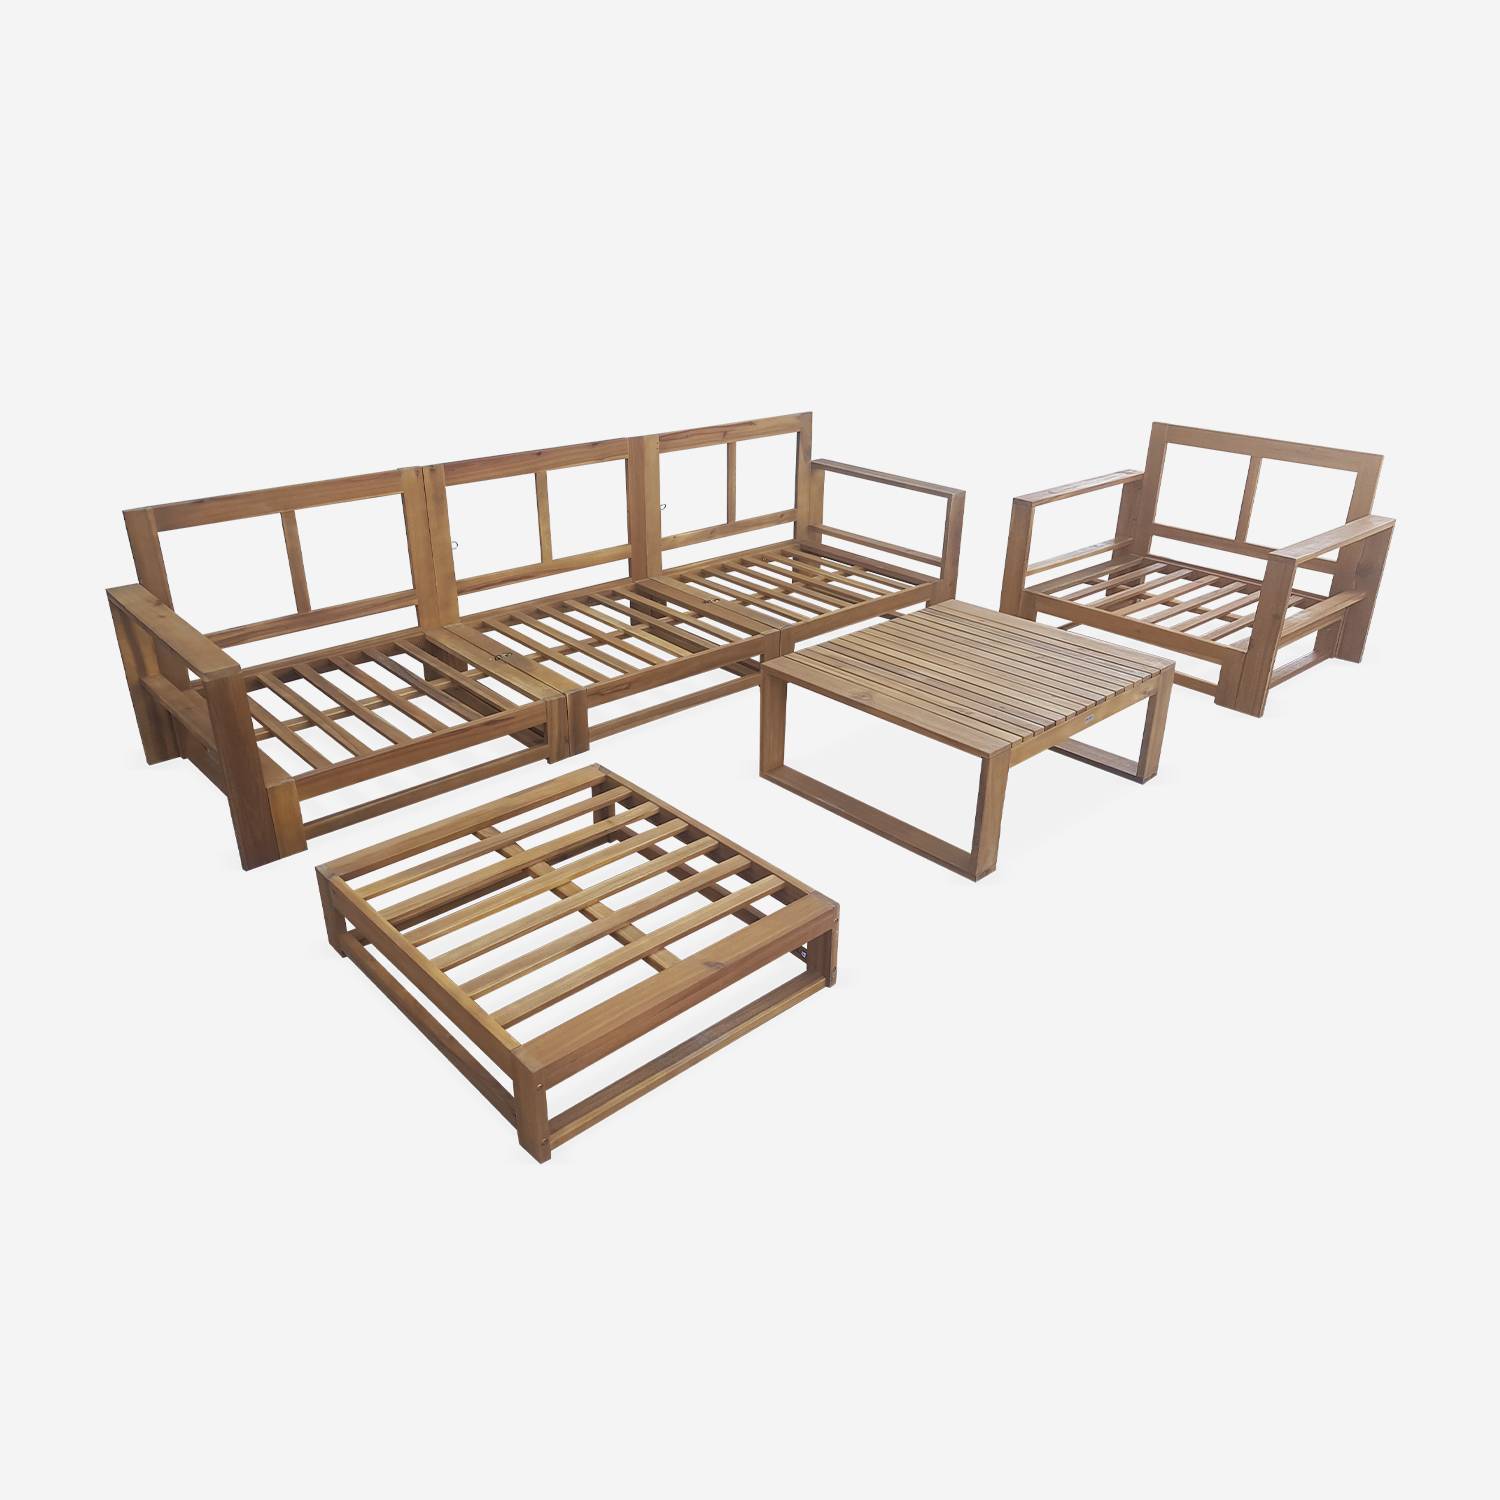 Salon de jardin en bois 5 places - Mendoza - Coussins gris, canapé, fauteuils et table basse en acacia, 6 éléments modulables, design Photo8